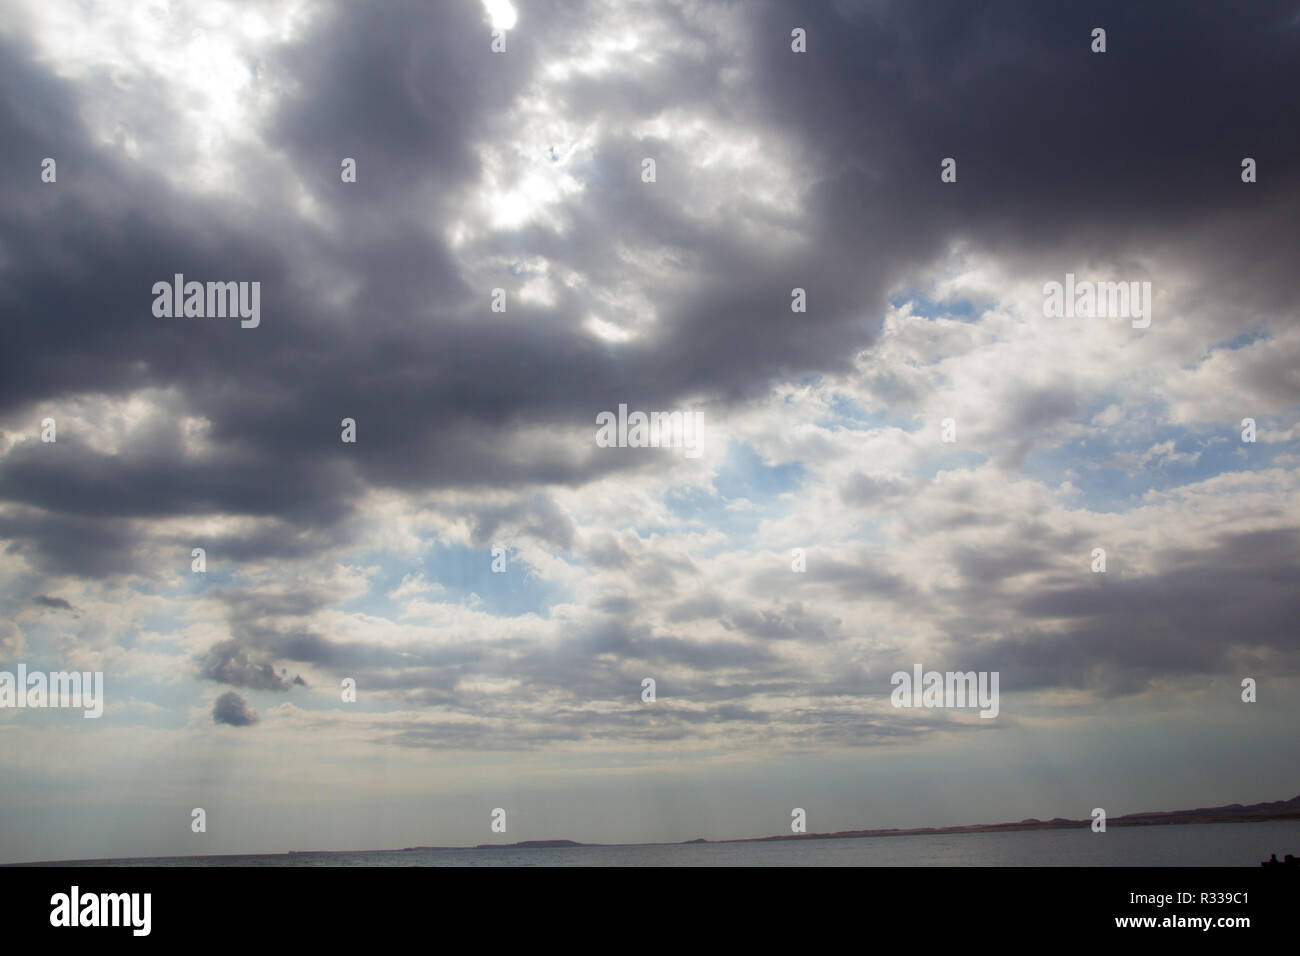 El-Shaikh Sharm, Ägypten - November 2, 2018: - Foto für das Rote Meer in der ägyptischen Stadt Scharm el-Scheich, die Wasser und Wolken. Stockfoto